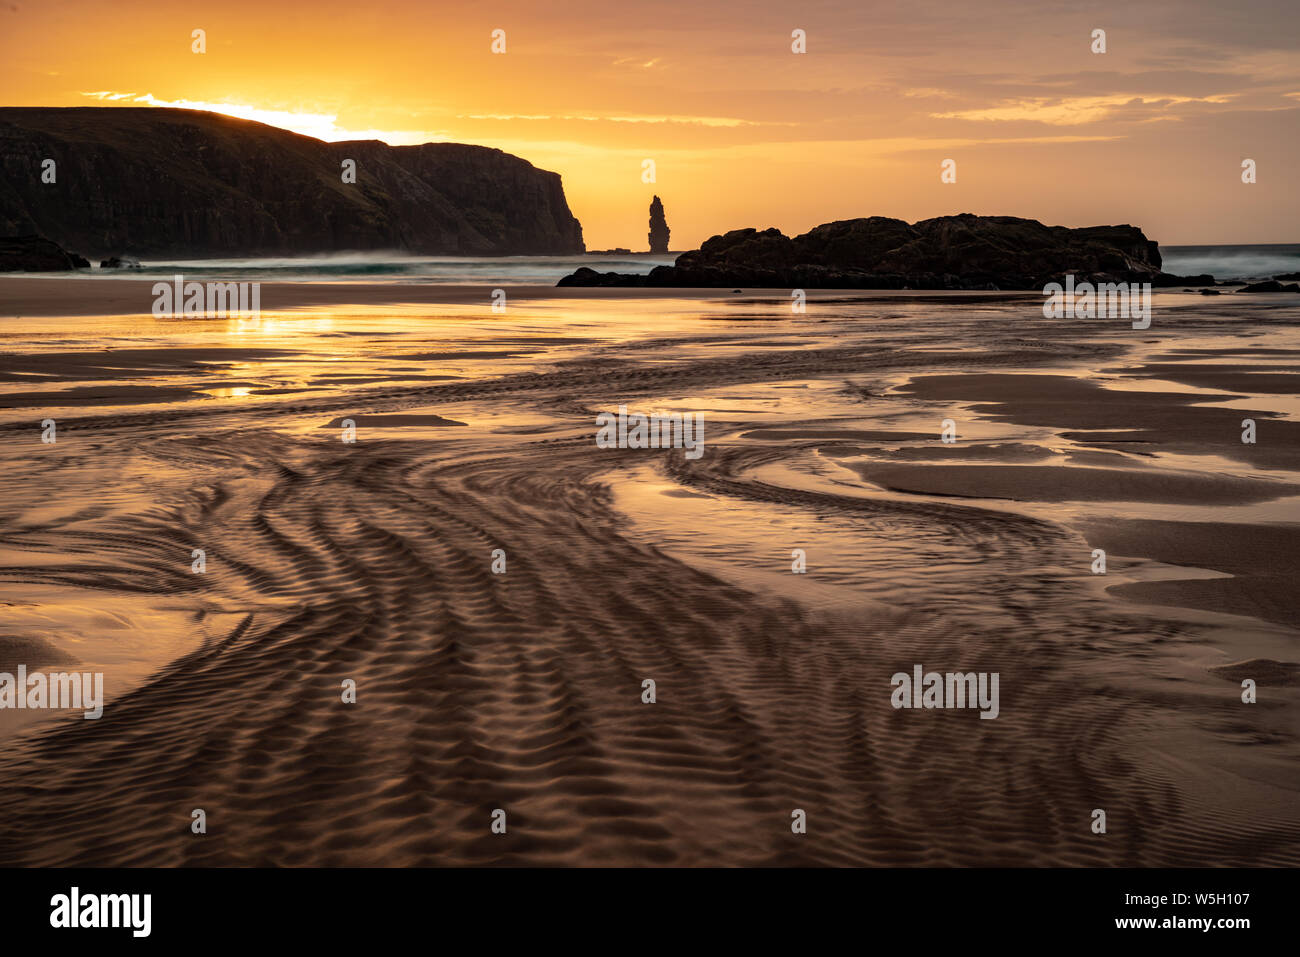 Am Buachaille sea stack at sunset, Sandwood Bay, Sutherland, Scotland, United Kingdom, Europe Stock Photo